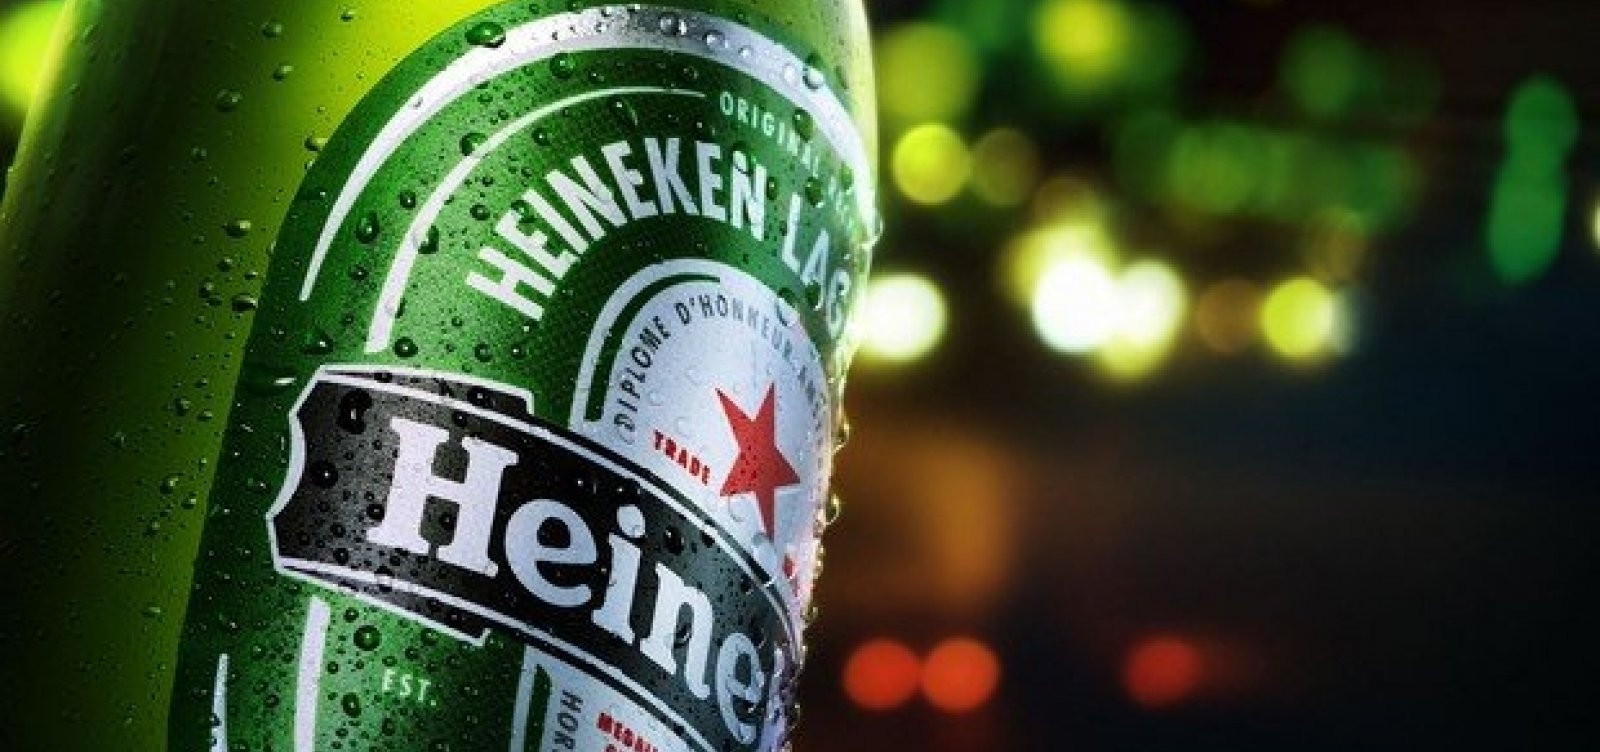 Heineken quer disputar com Ambev pelo Carnaval de Salvador